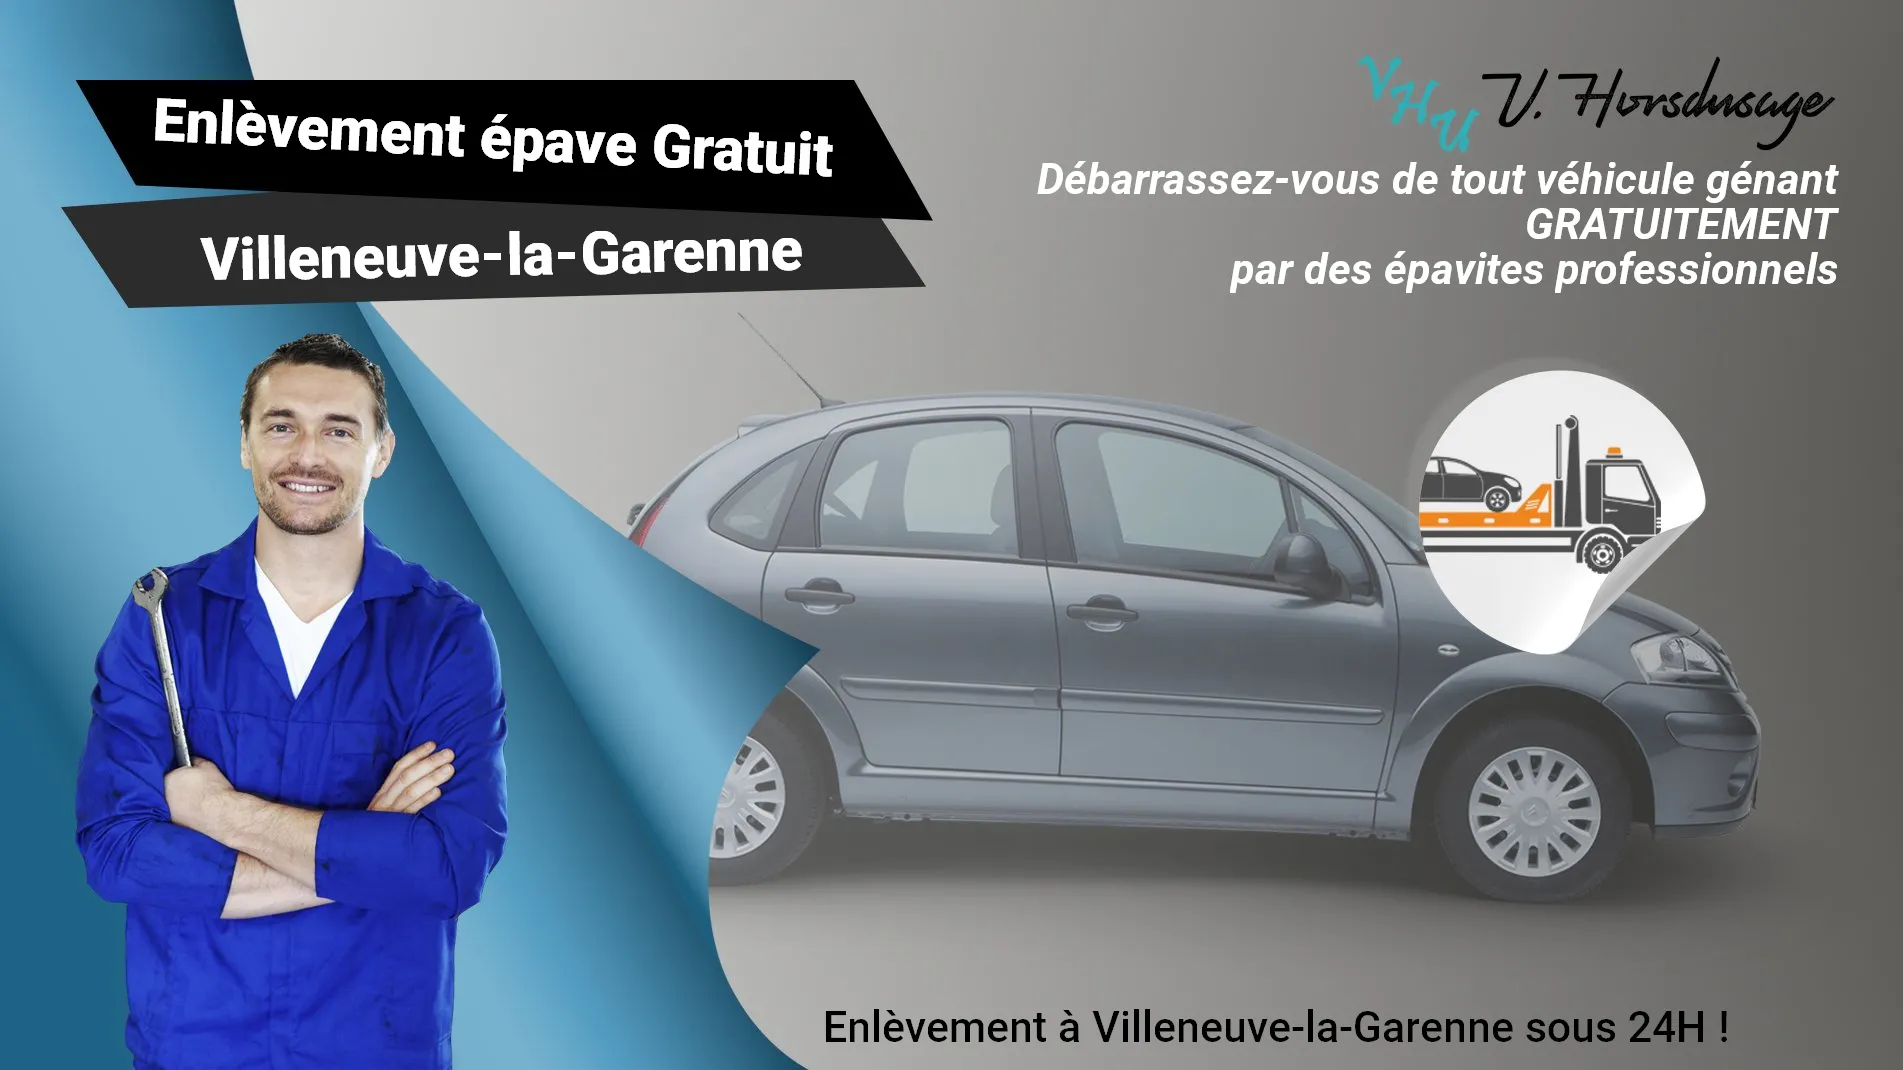 Pour un enlèvement gratuit à Villeneuve-la-Garenne, contactez nos épavistes agréé VHU